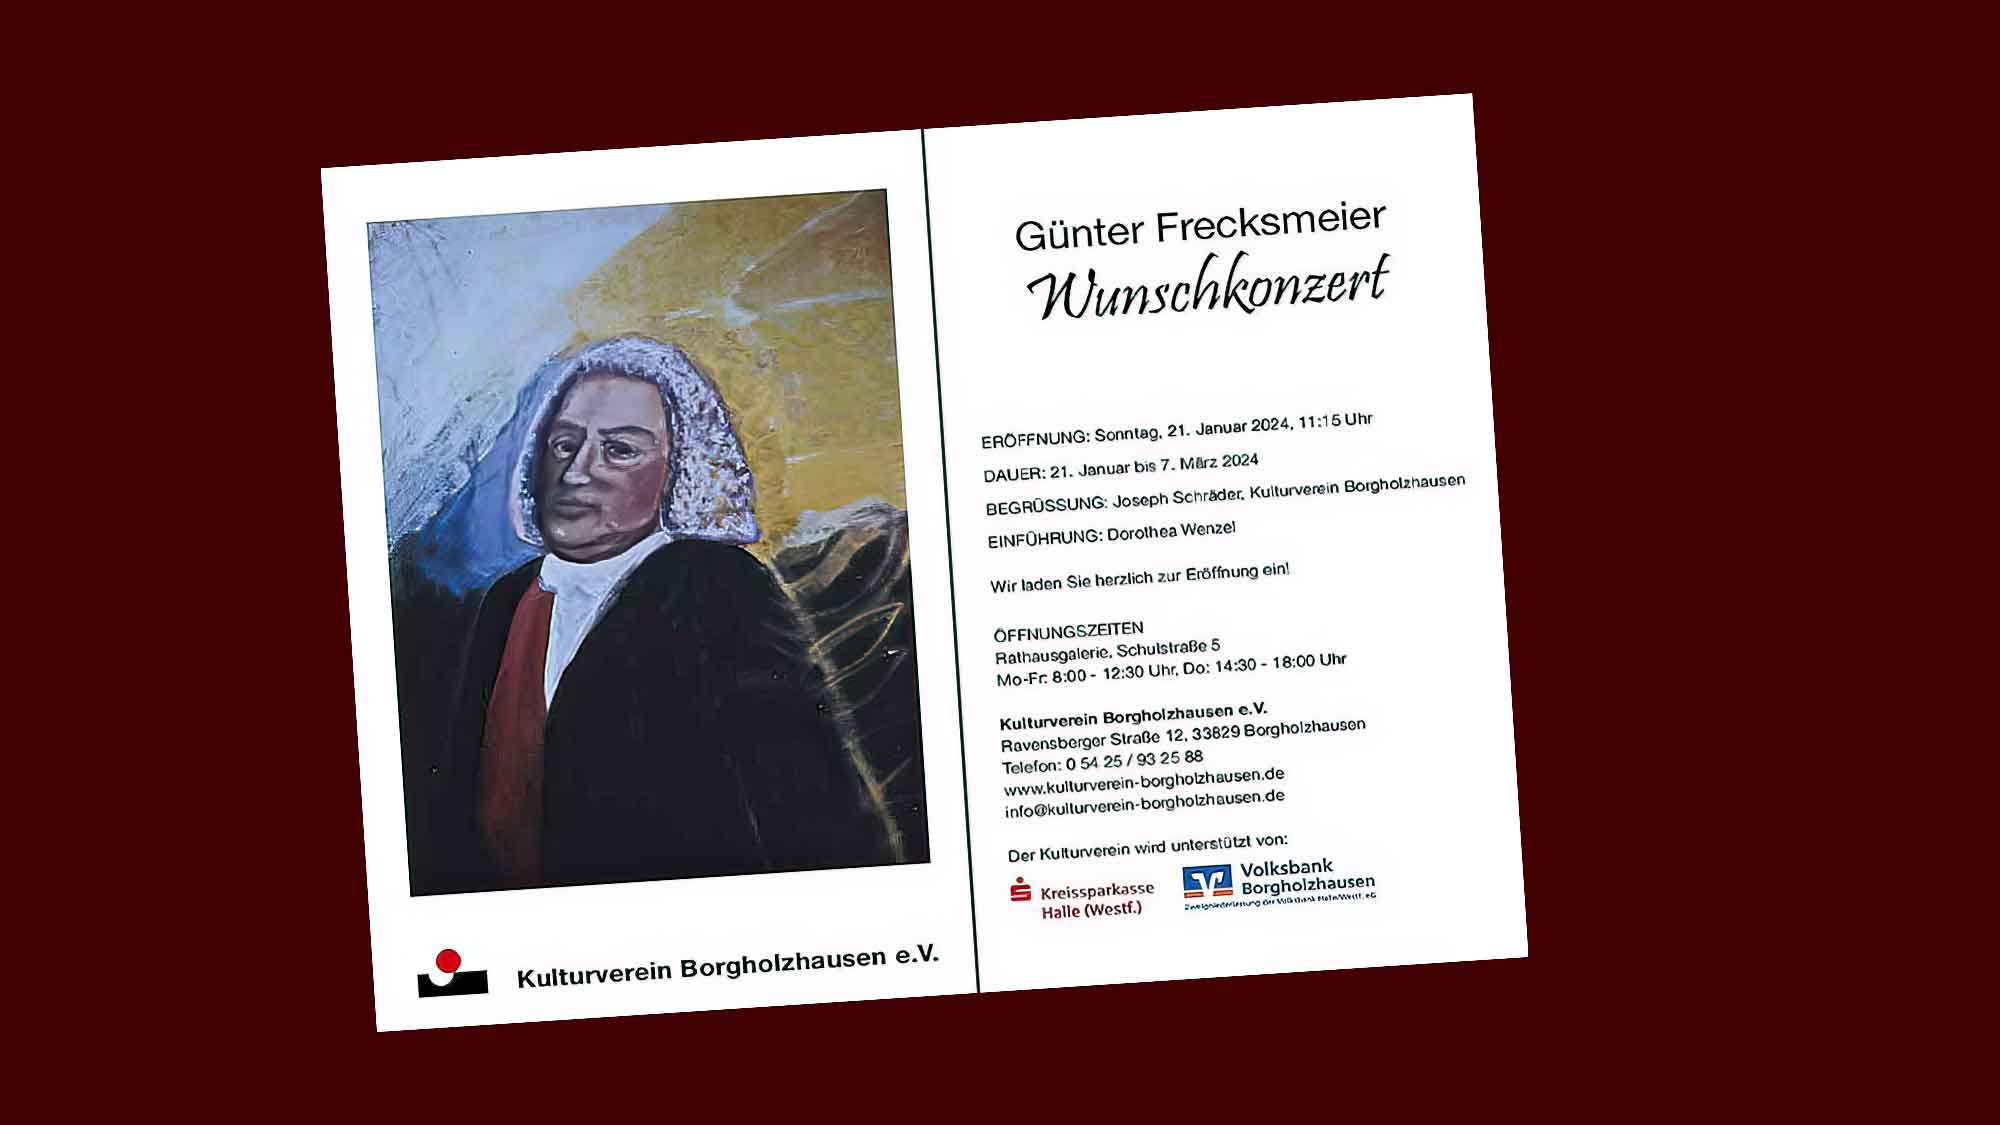 Kulturverein Borgholzhausen, Wunschkonzert mit Günter Frecksmeier (Bielefeld), 21. Januar 2024